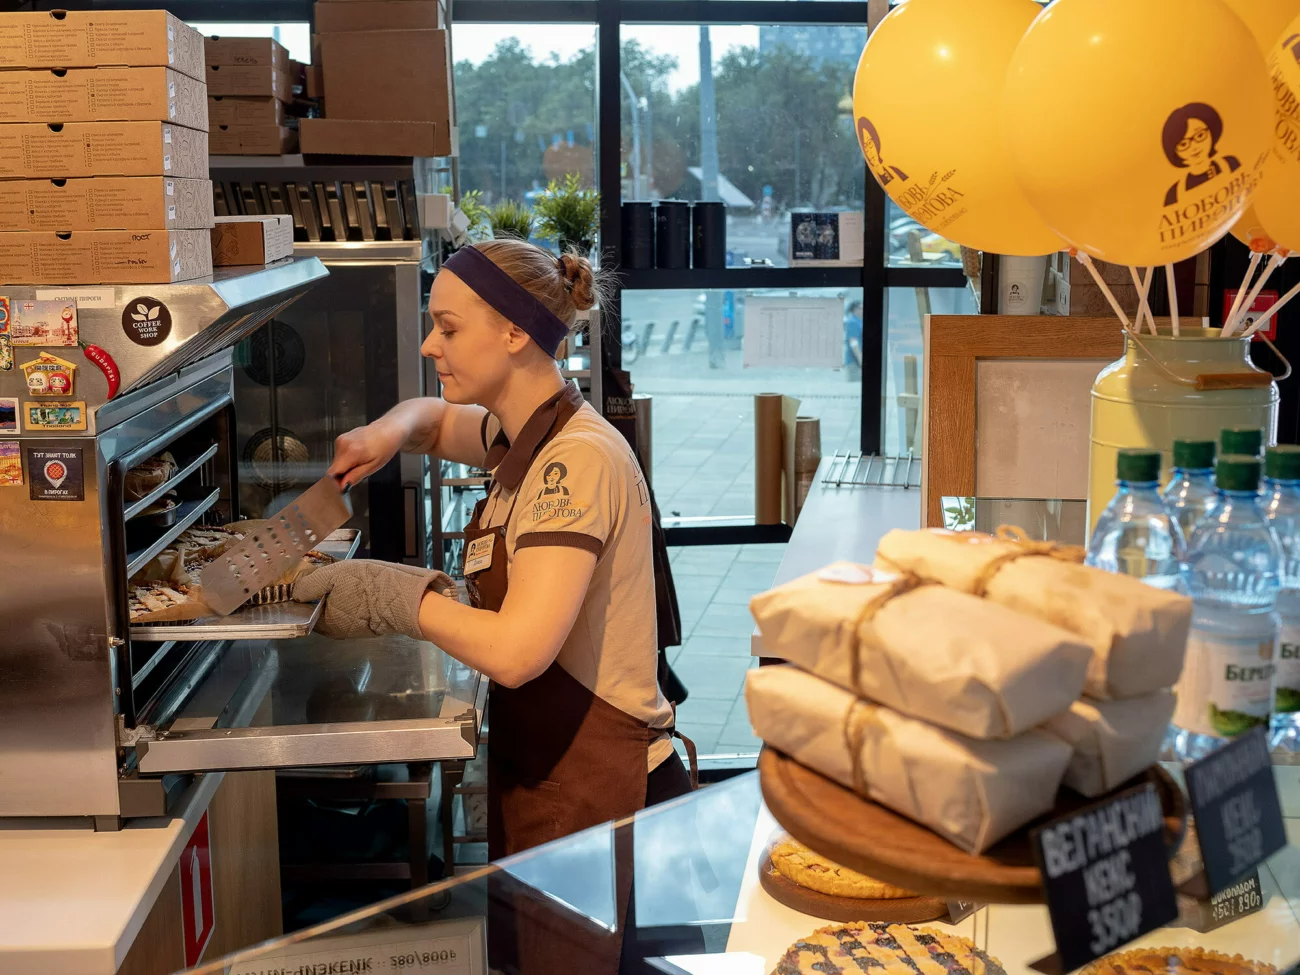 Мини пекарня как бизнес из личного опыта: бизнес план с расчетами